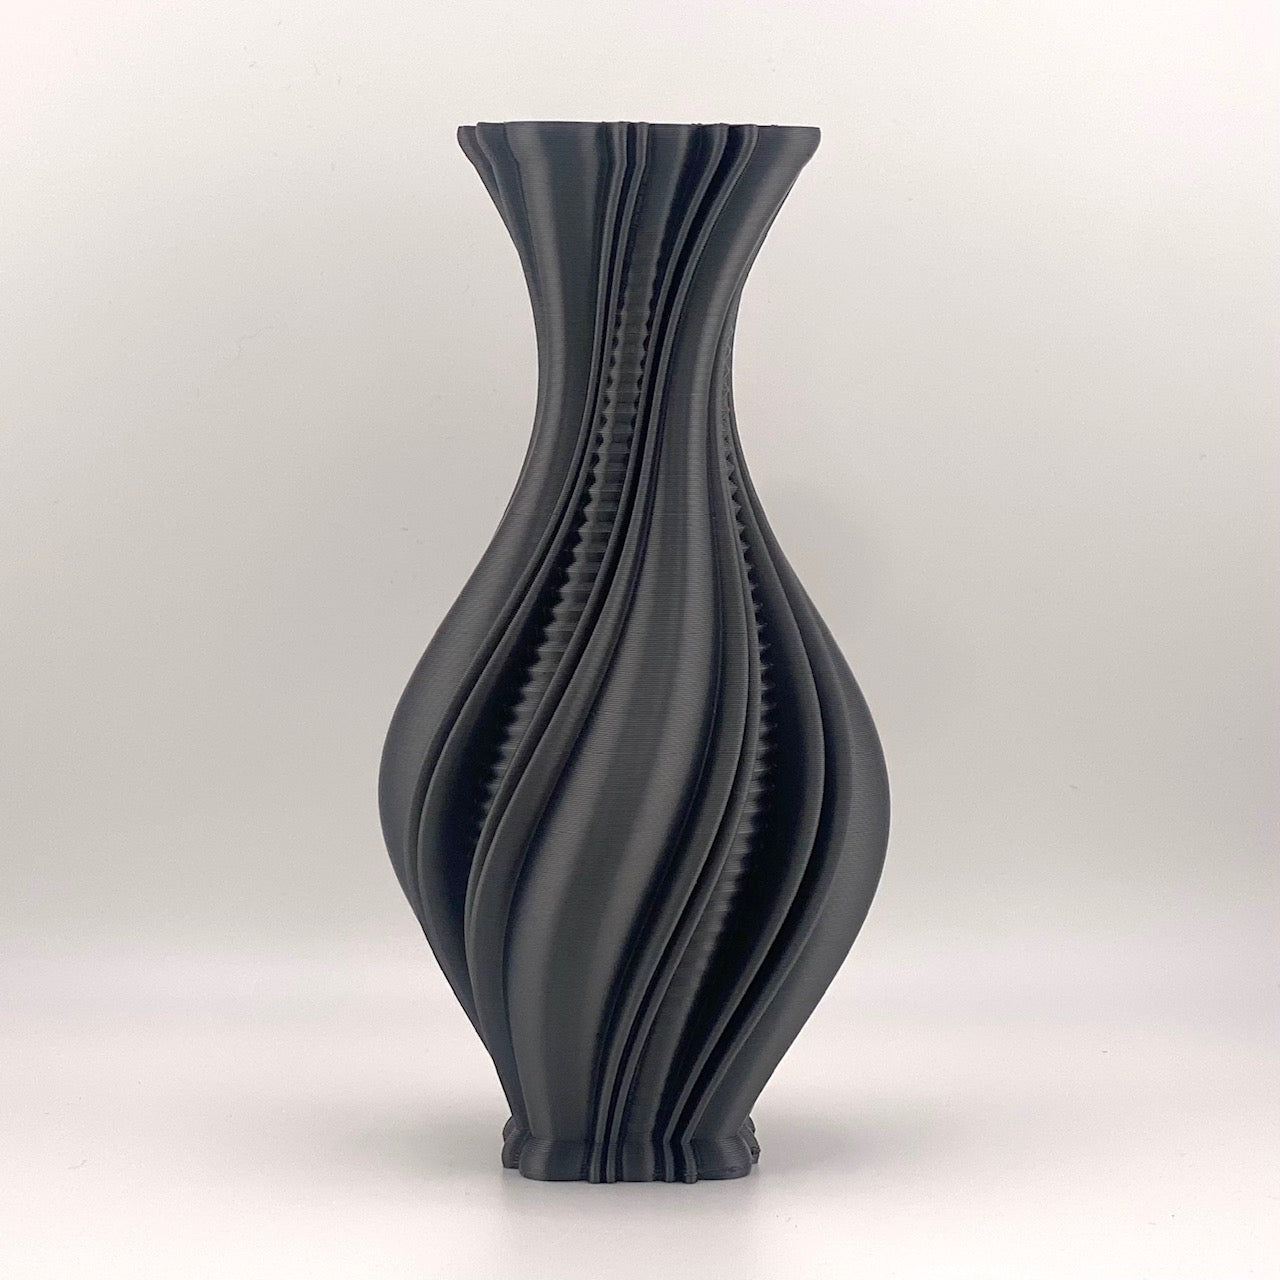 Resplendence Vase 3D printed in Night Sky Black glossy filament